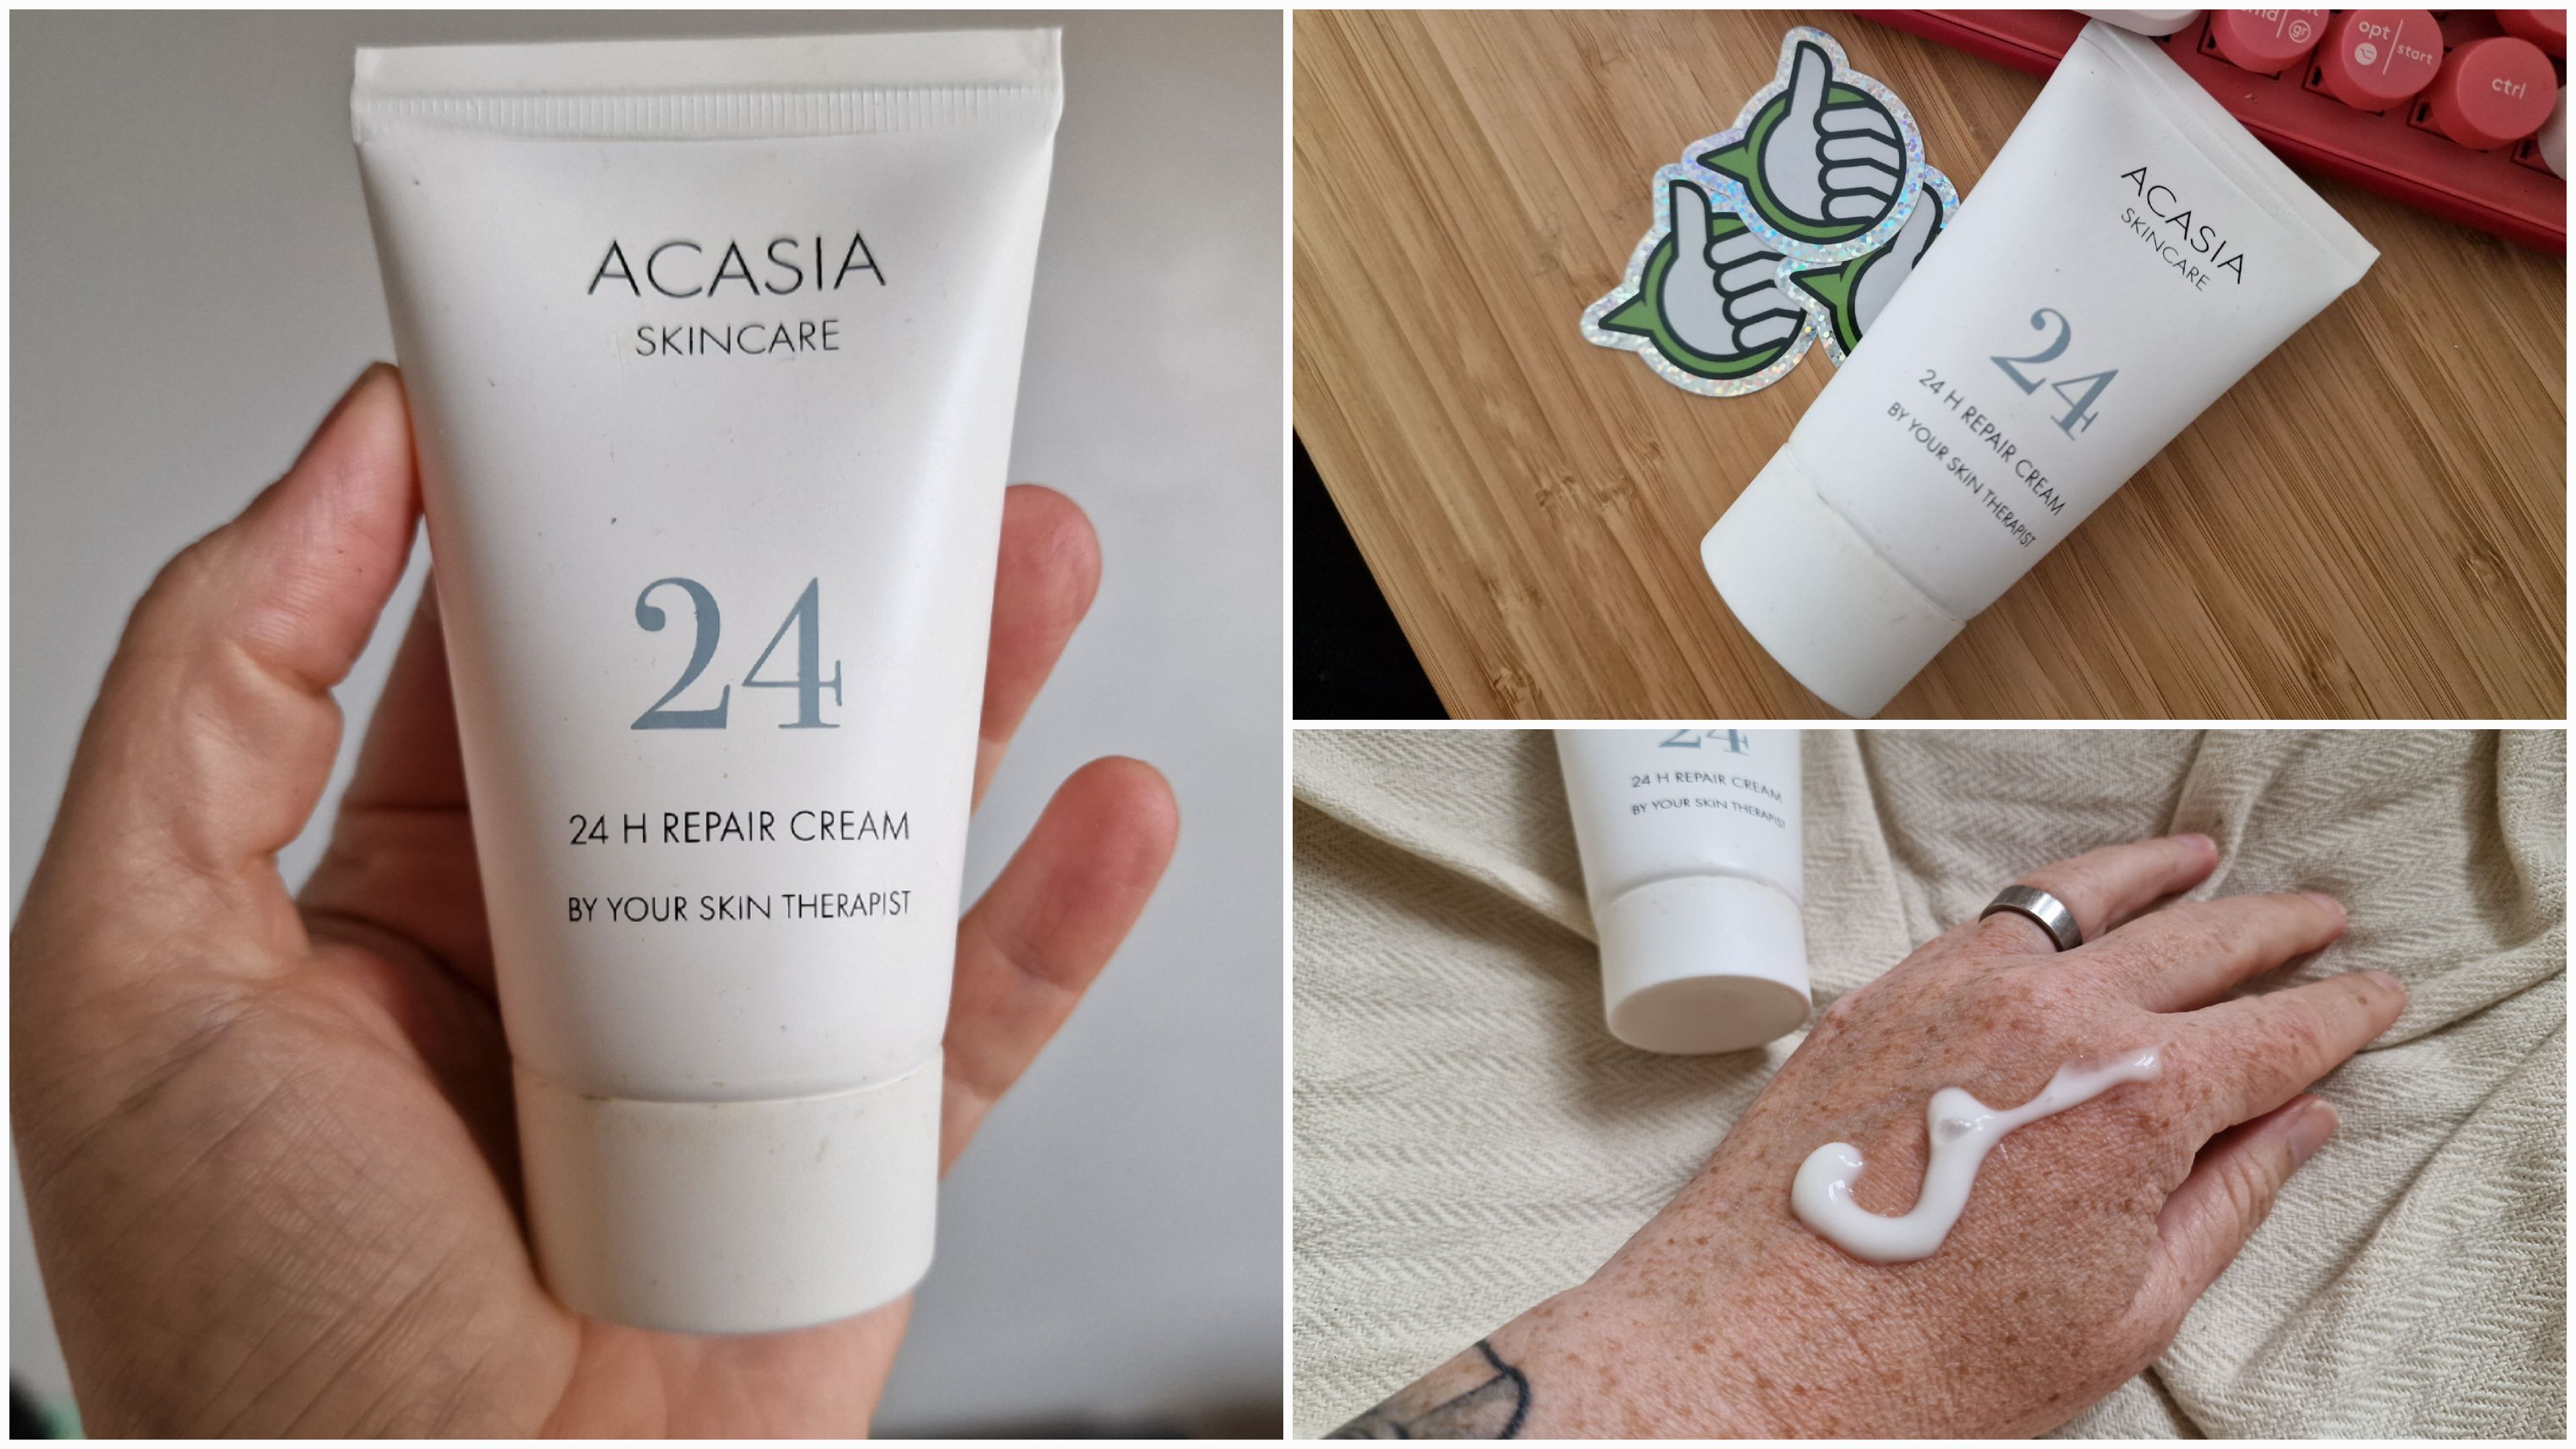 BiT Acasia Skincare 24 H Repair Cream